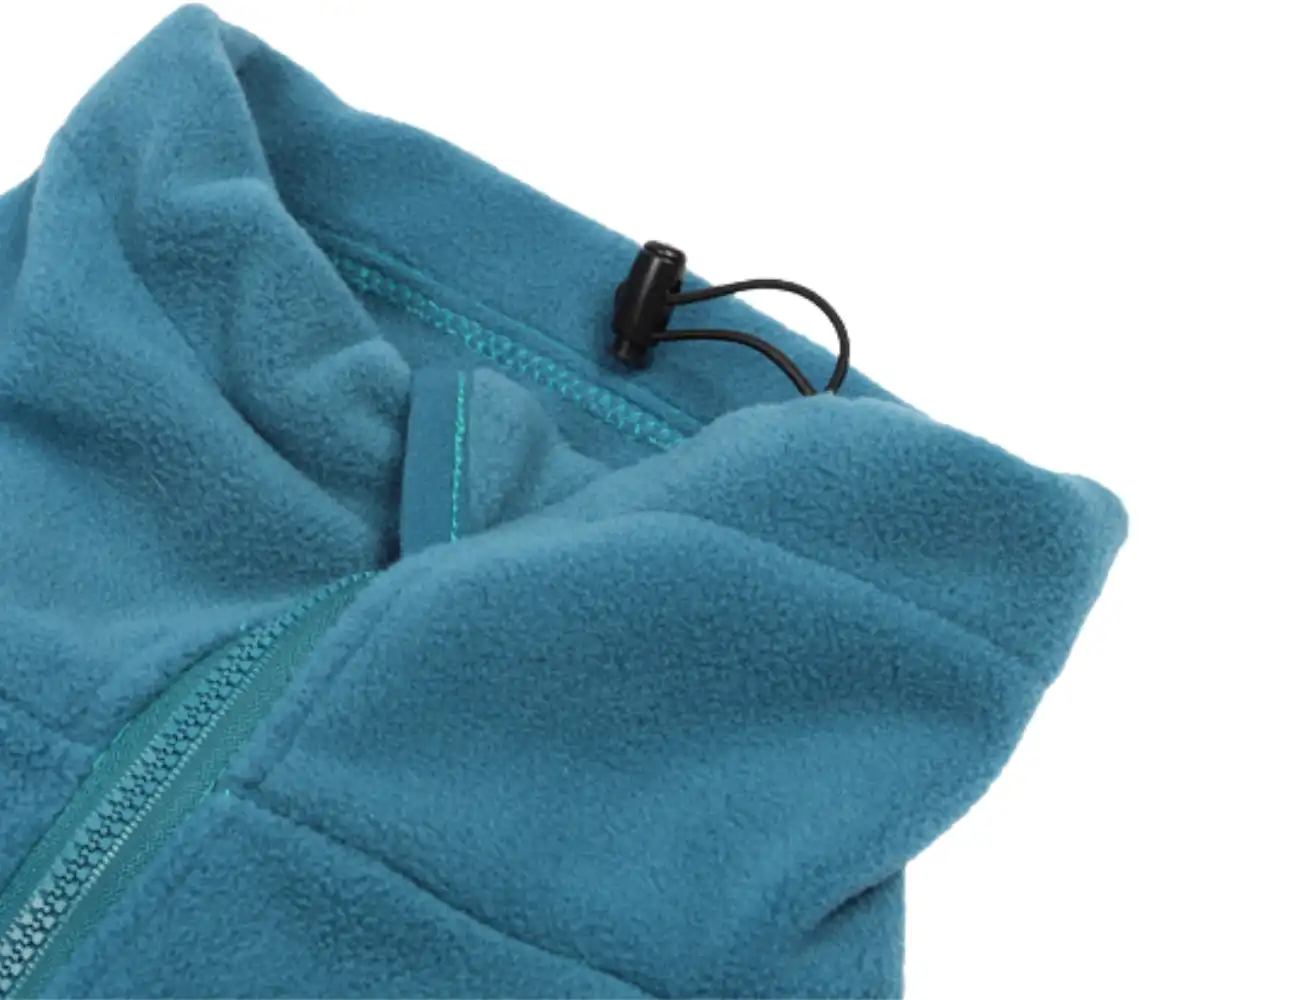 Details of Dog Polar Fleece Winter Coat - High Neck Windproof Design